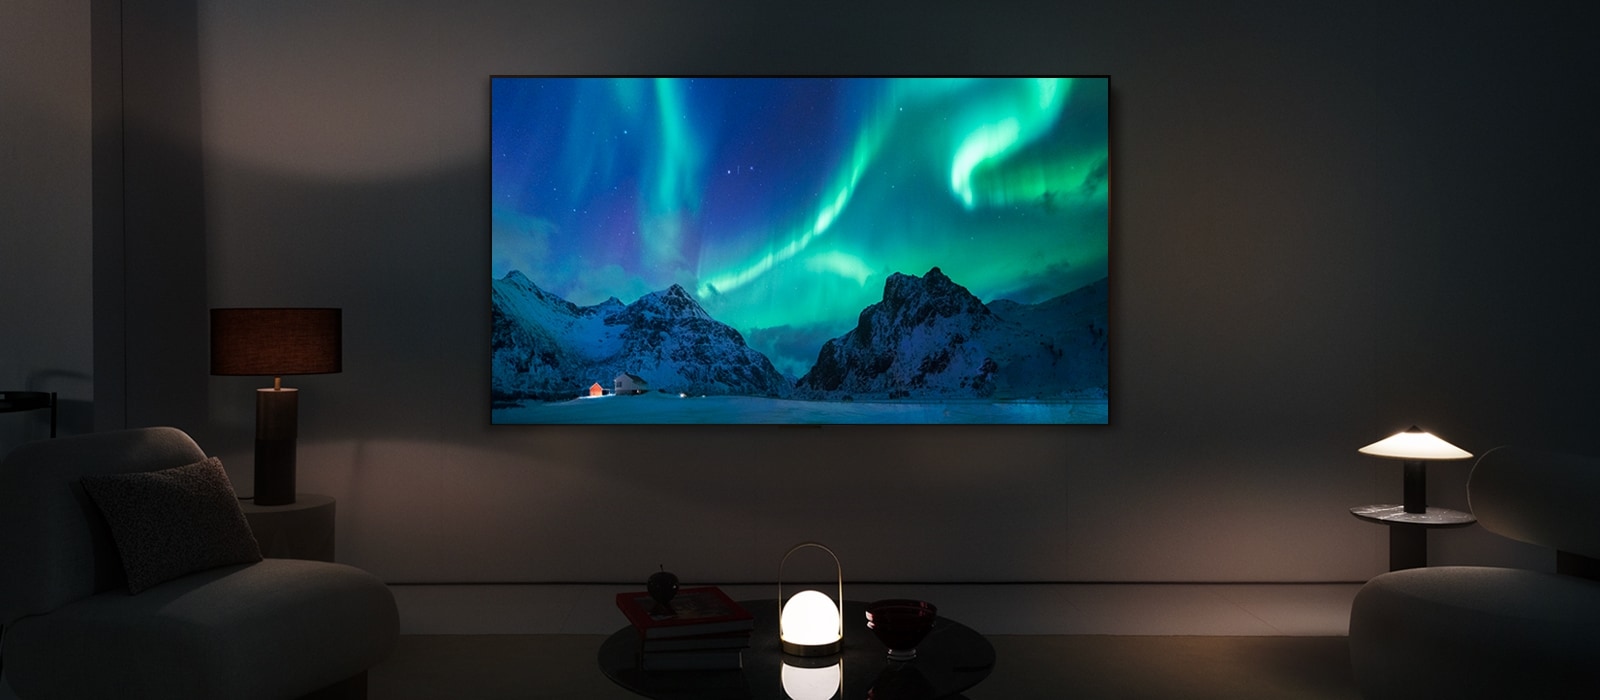 LG OLED TV w nowoczesnej przestrzeni nocnej. Obraz zorzy polarnej wyświetlany jest z idealnym poziomem jasności.